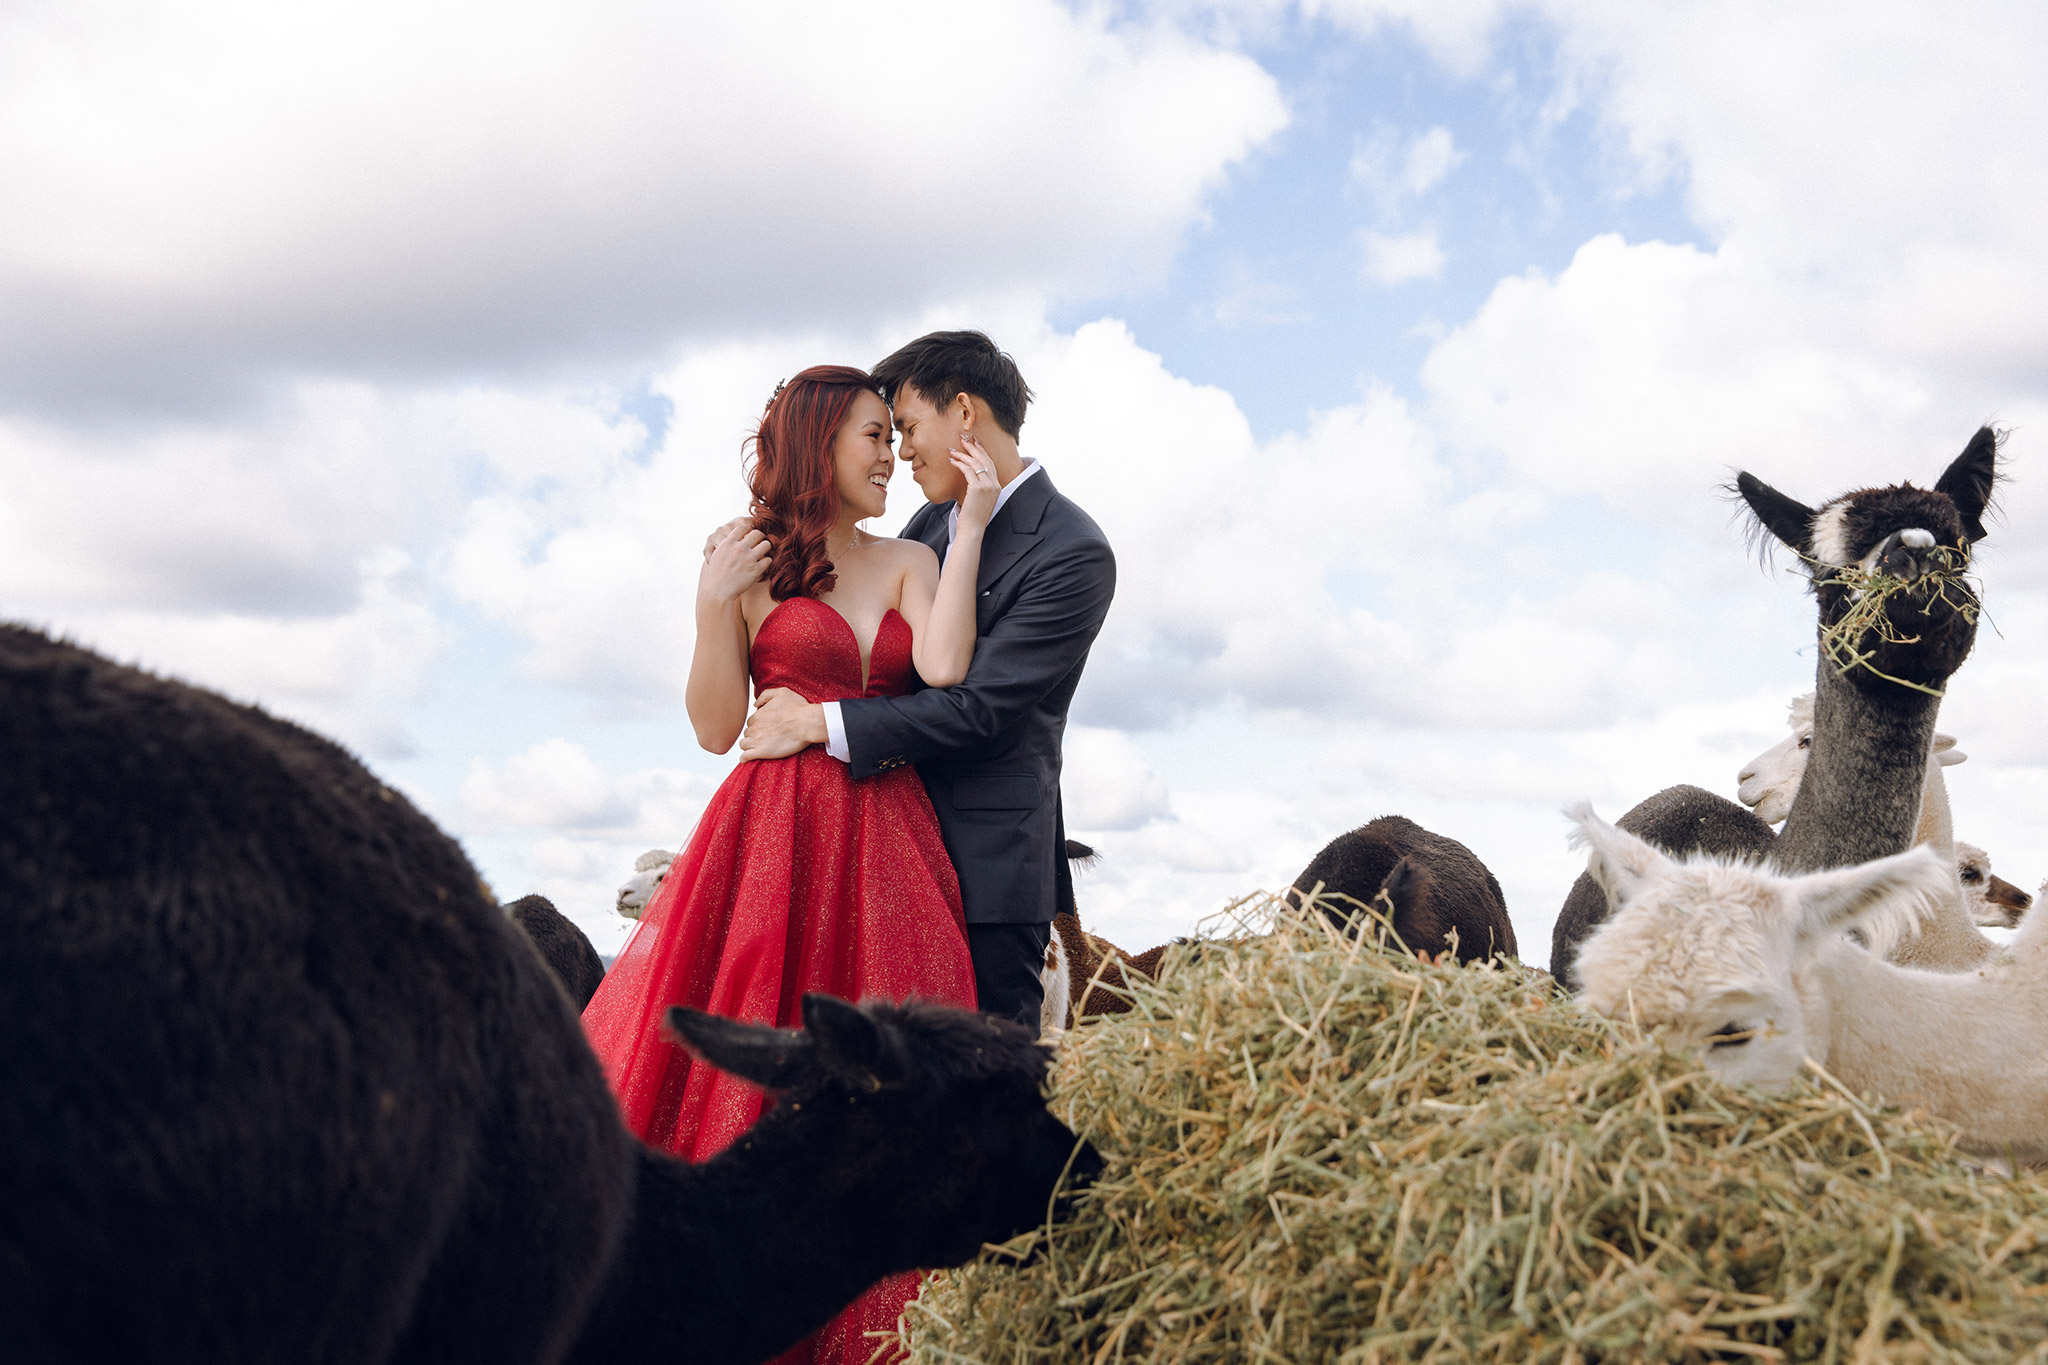 Melbourne Pre-Wedding Photoshoot at Alpaca Farm, Fitzroy Gardens & Brighton Beach by Freddie on OneThreeOneFour 7